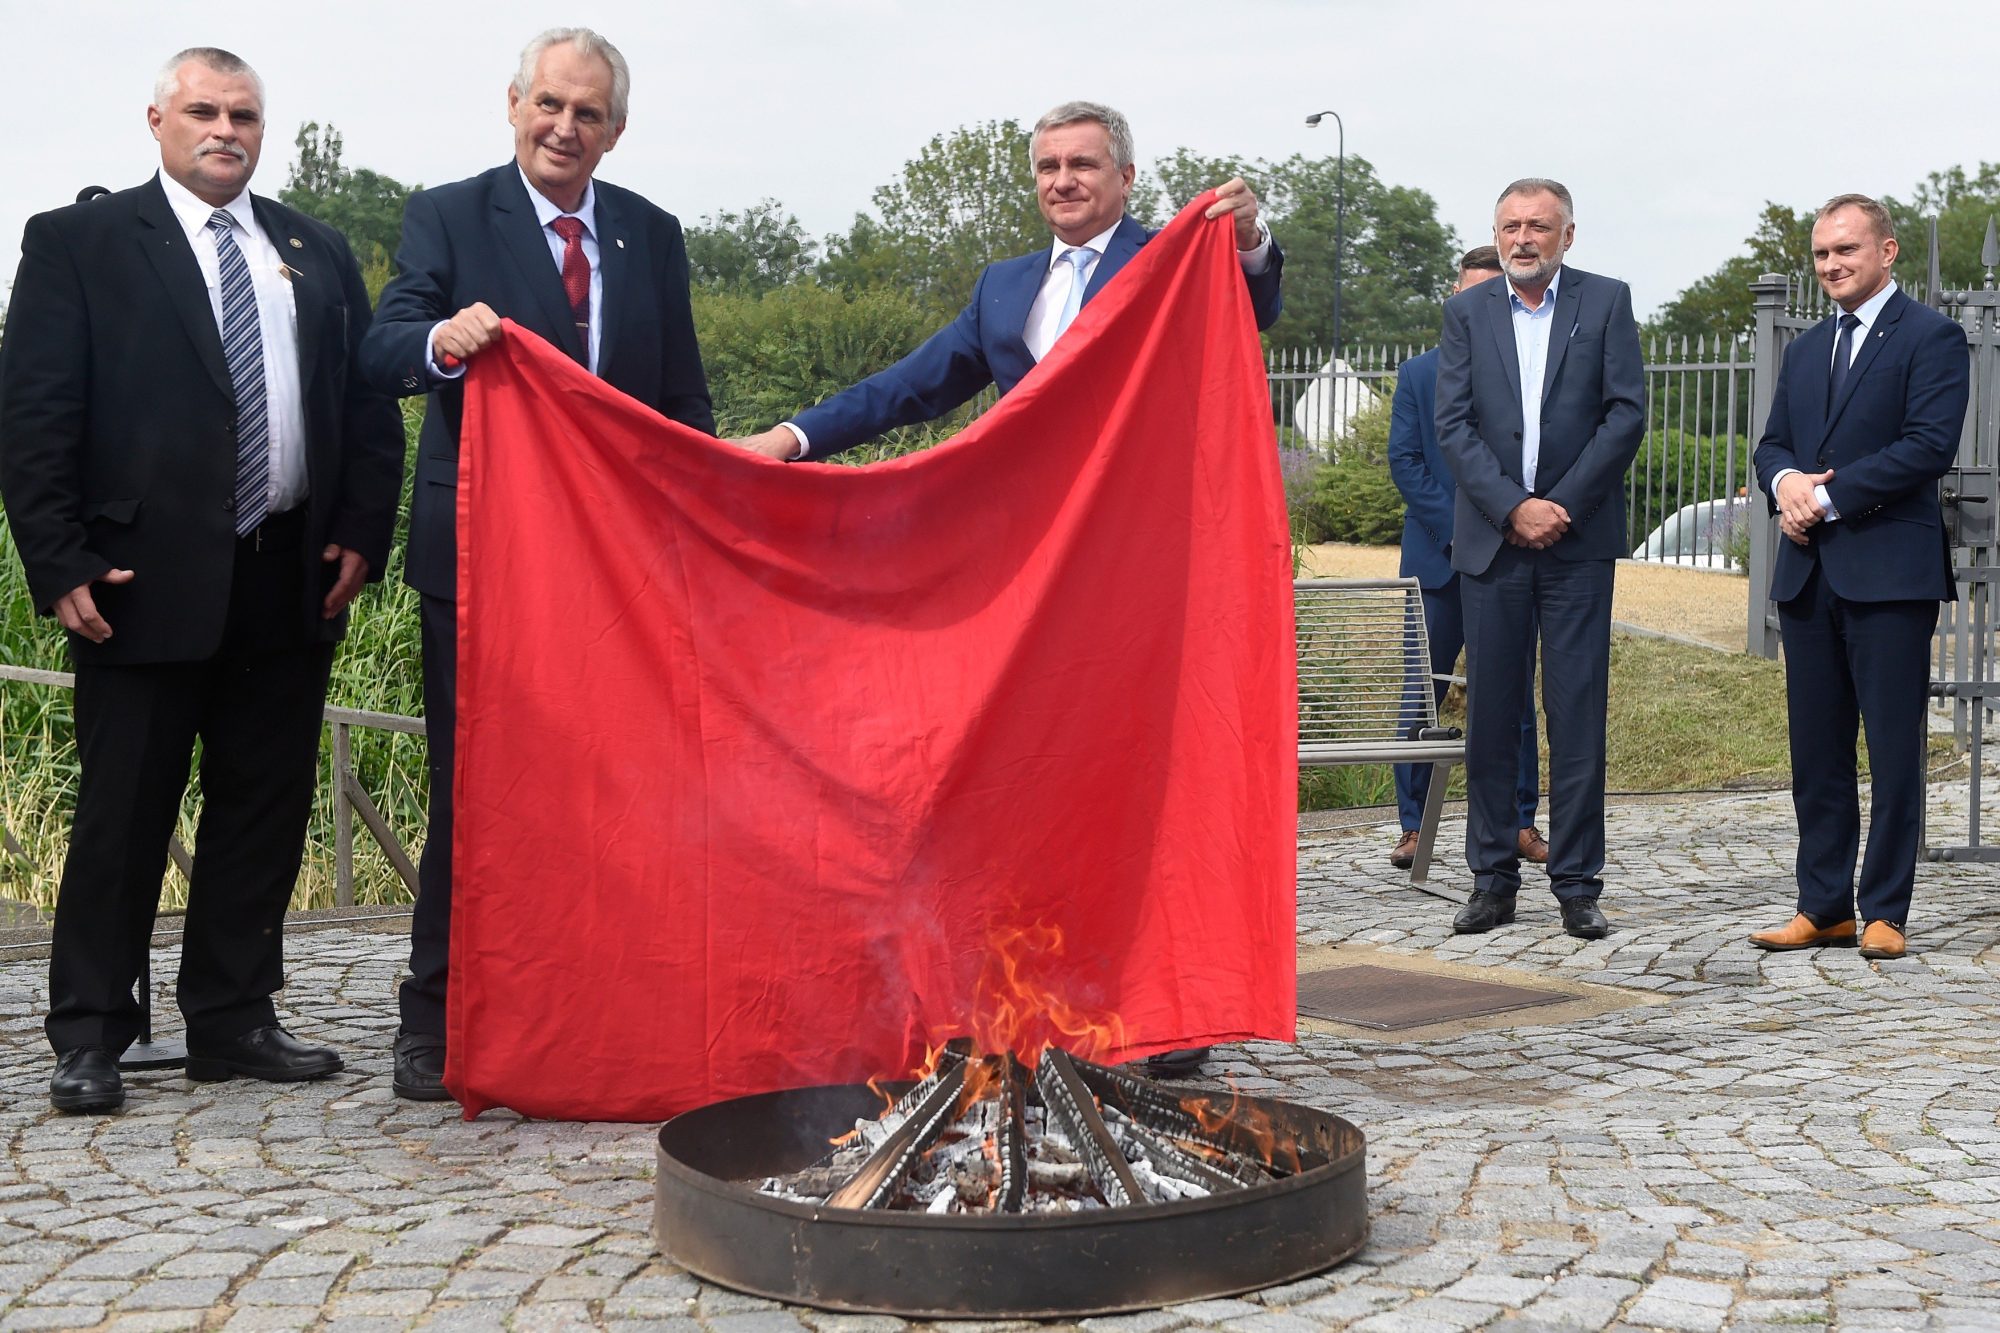 Prezident Miloš Zeman a kancléř Vratislav Mynář při pálení červených trenýrek (červen 2018) | Zdroj: Profimedia